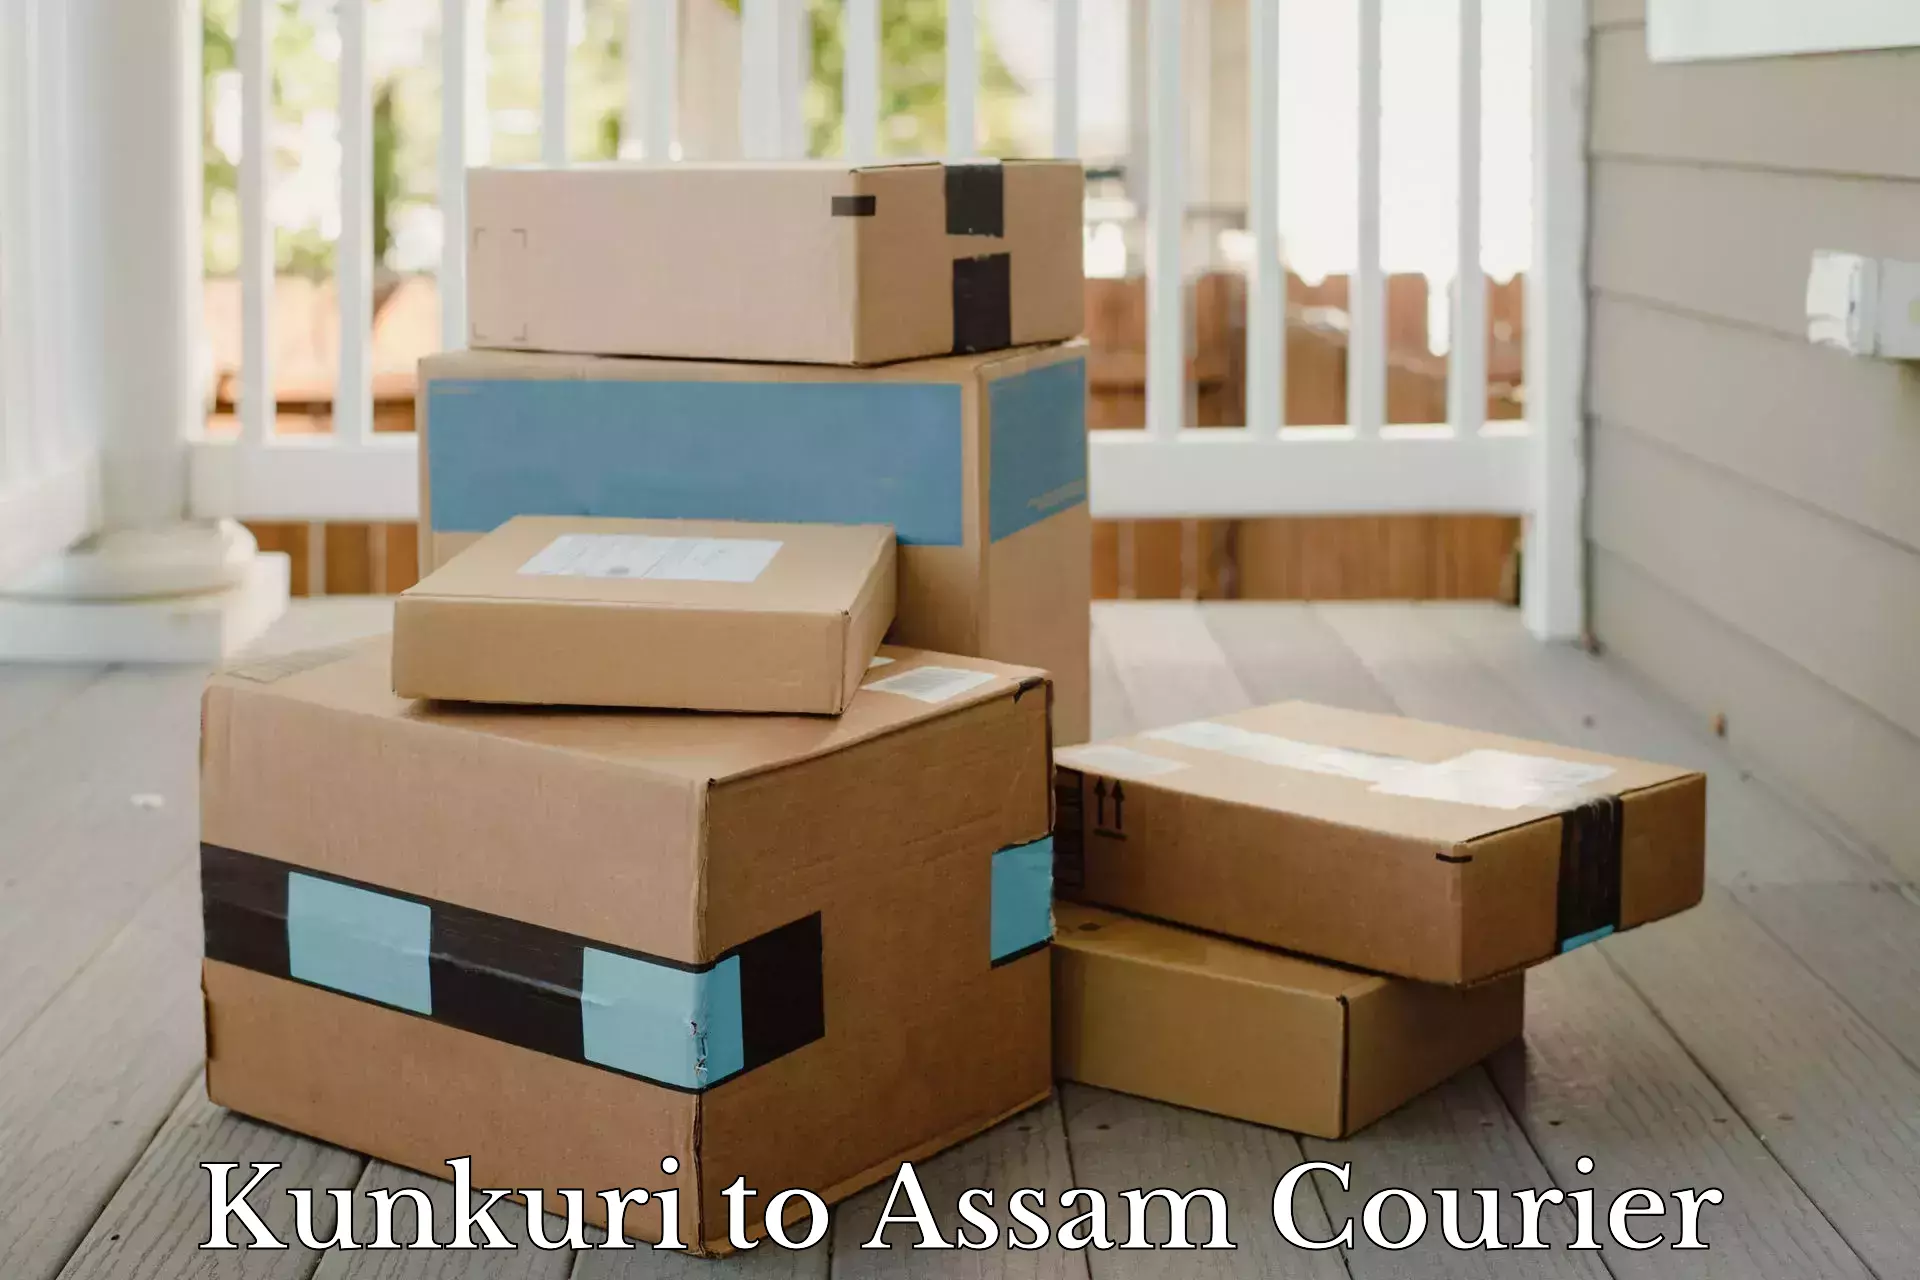 Cost-effective courier options Kunkuri to Sivasagar